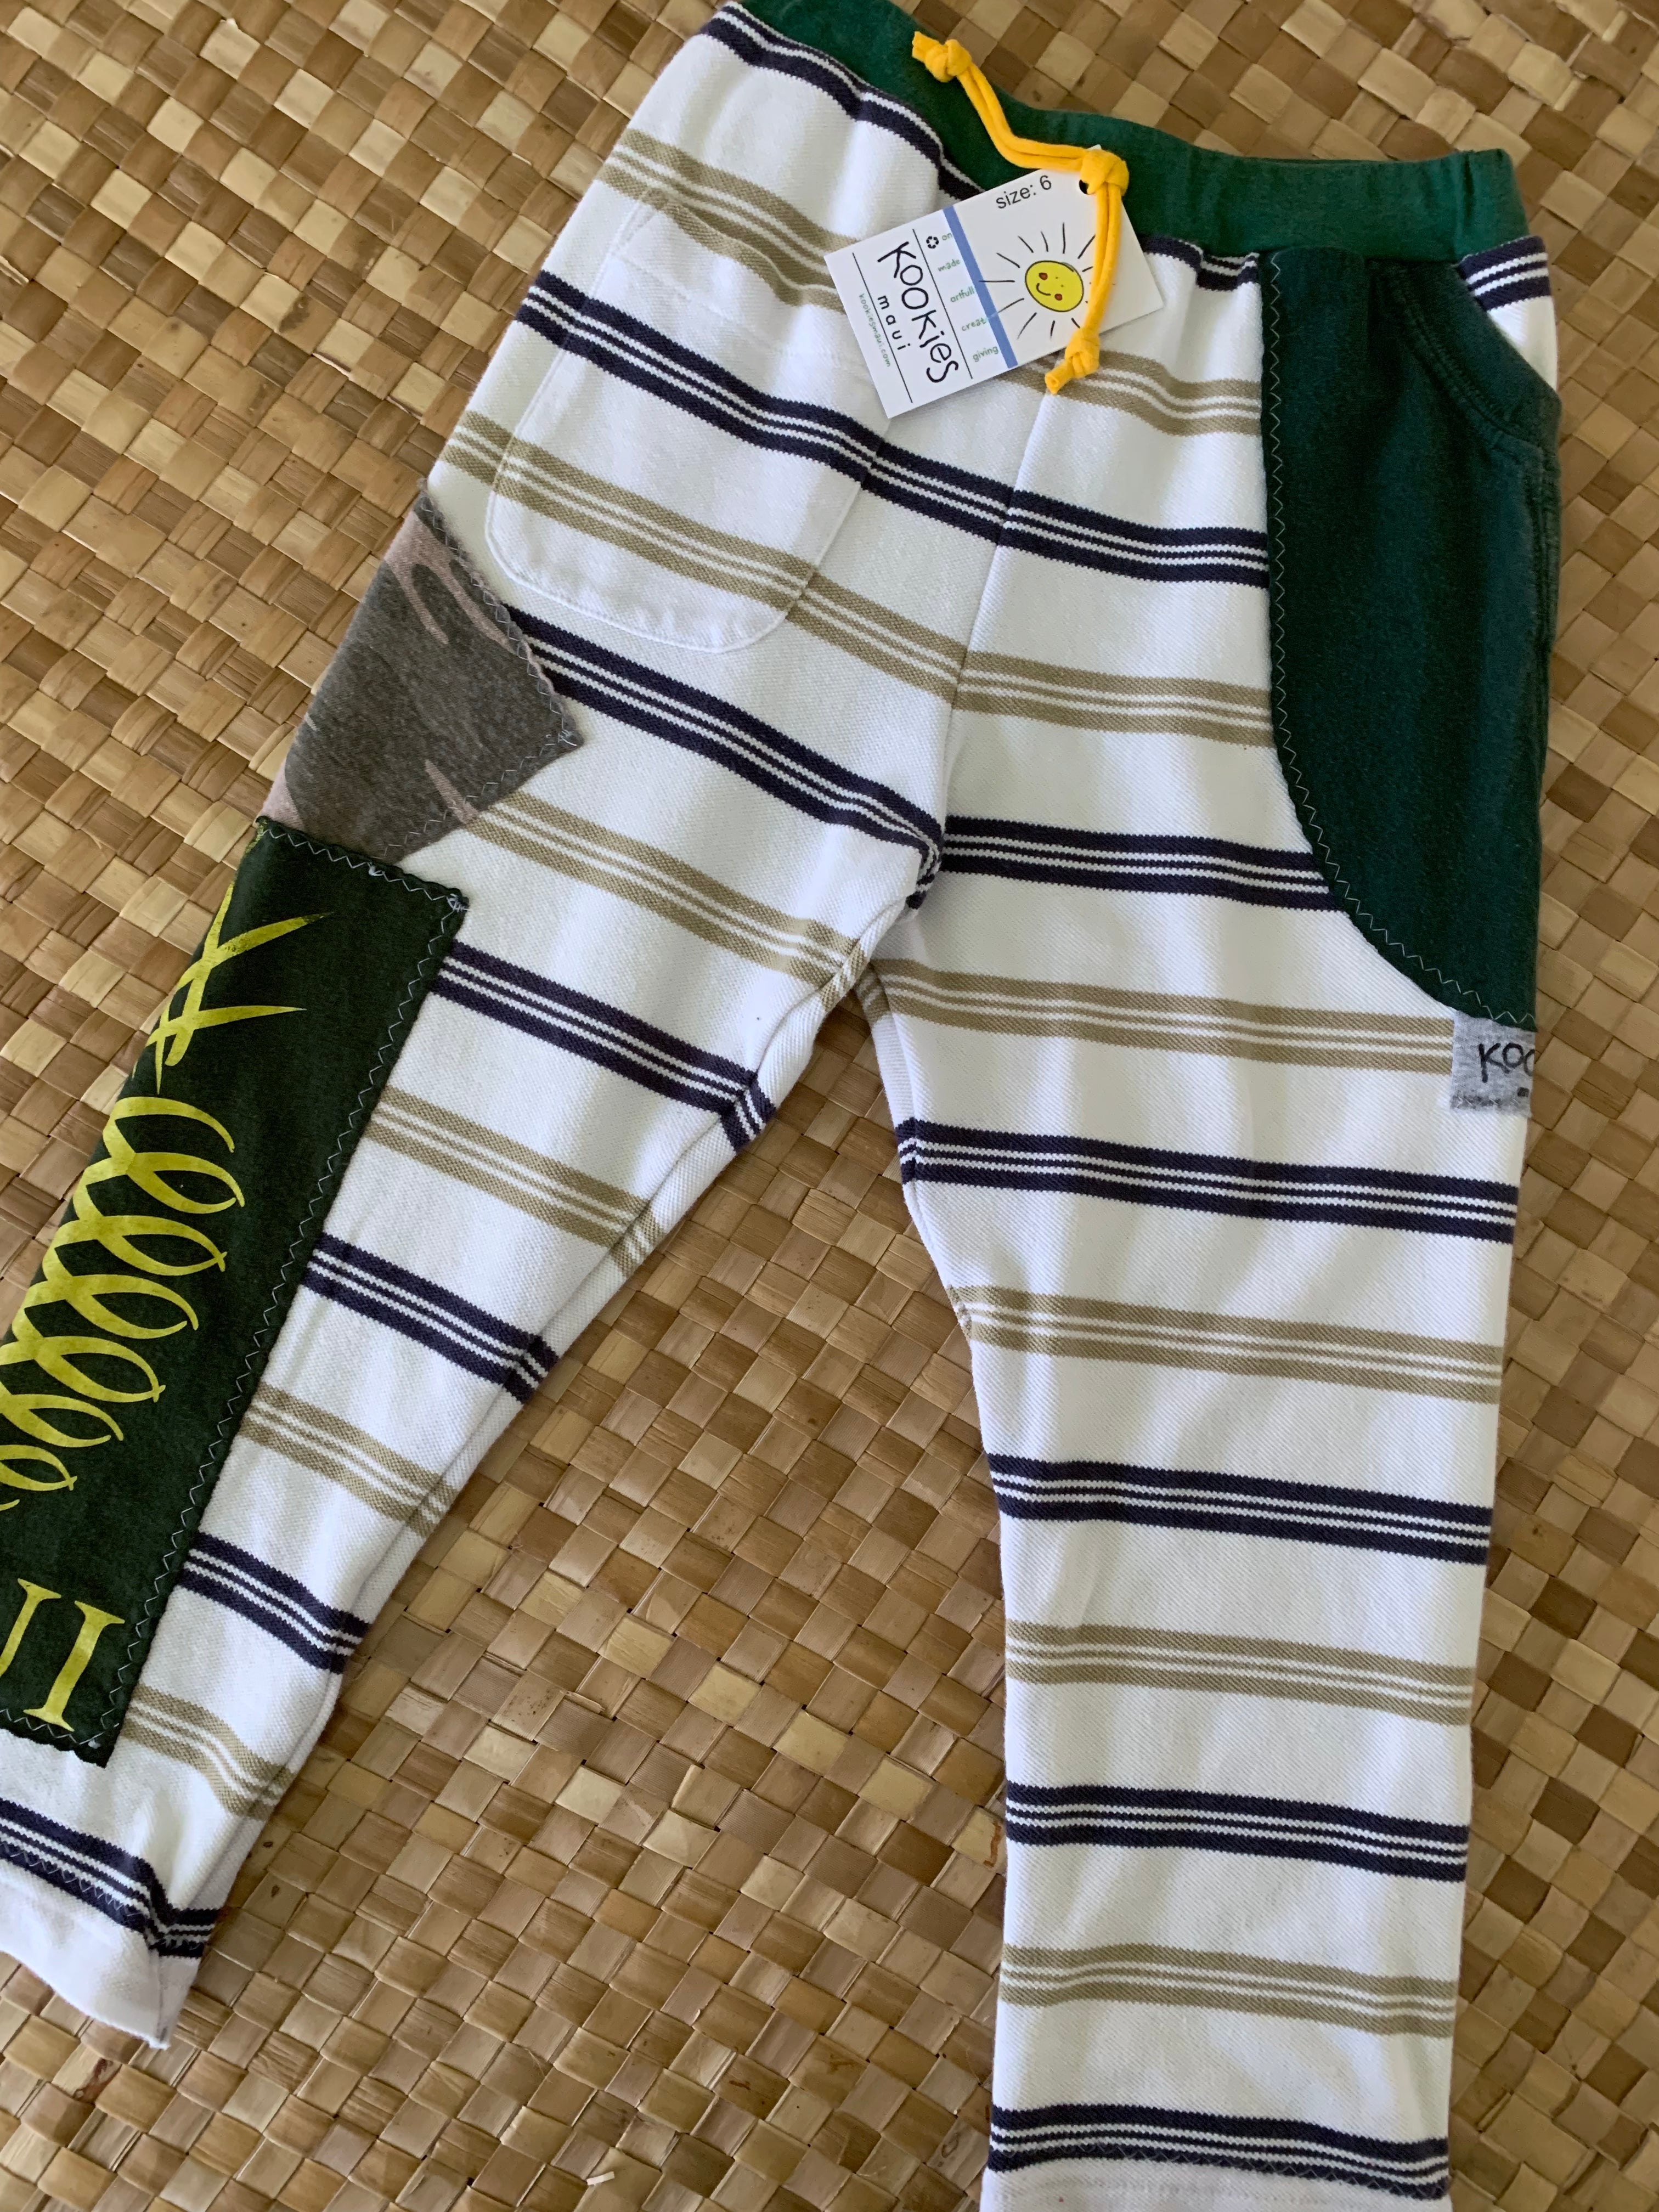 Kids Size 6 "Green Stripes & Camo Maui Gold Pineapple" Star Gazer Pants